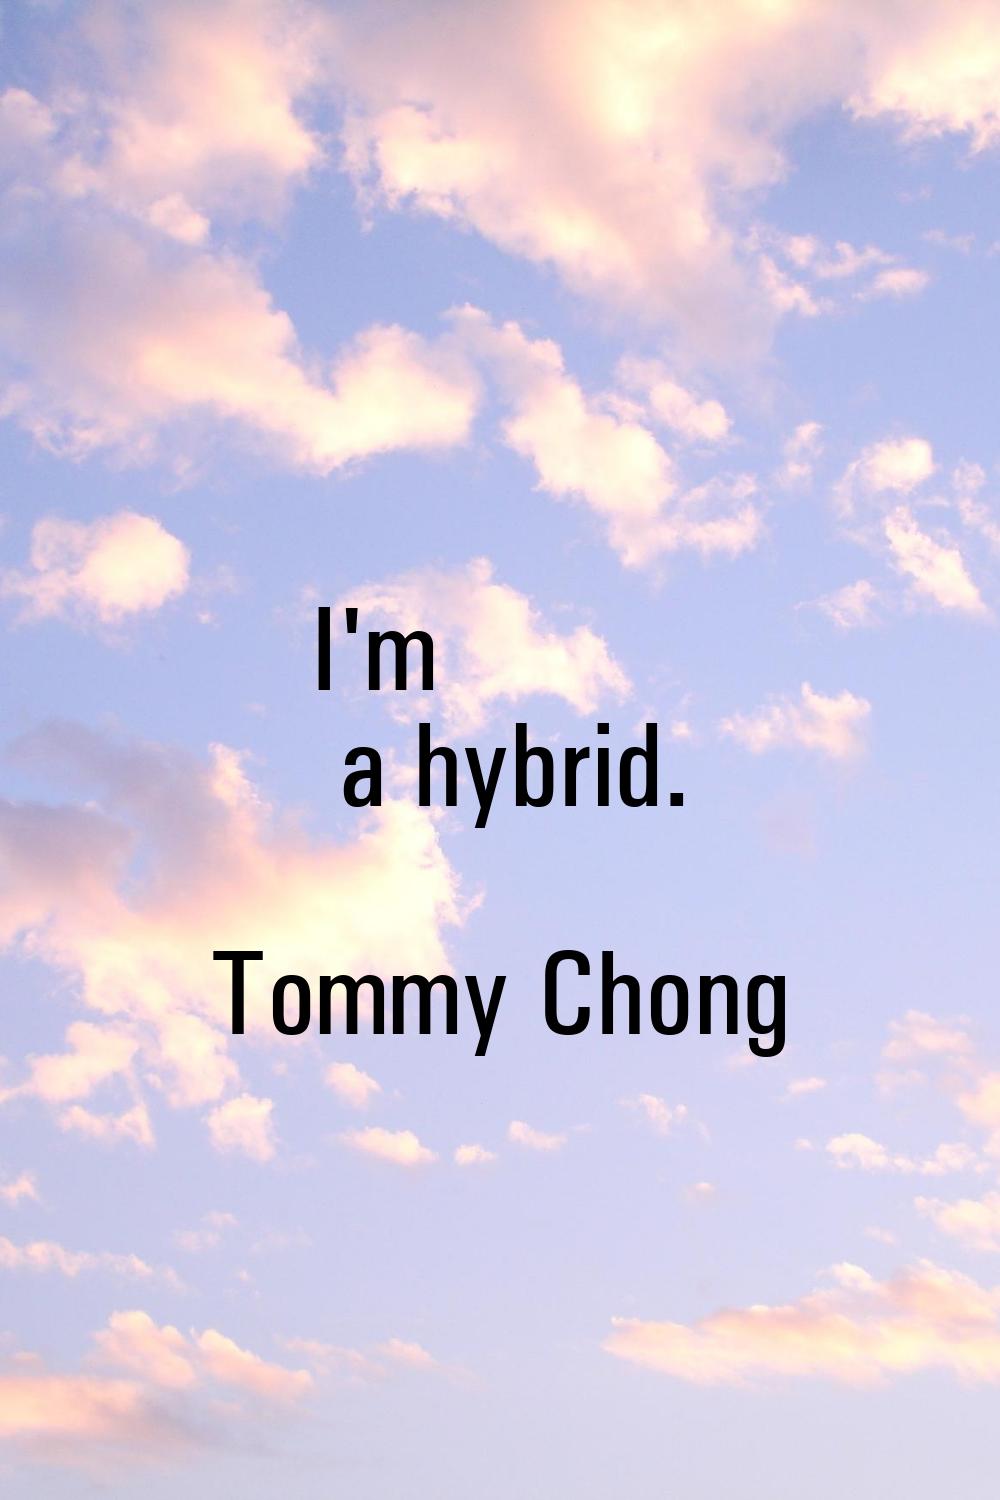 I'm a hybrid.